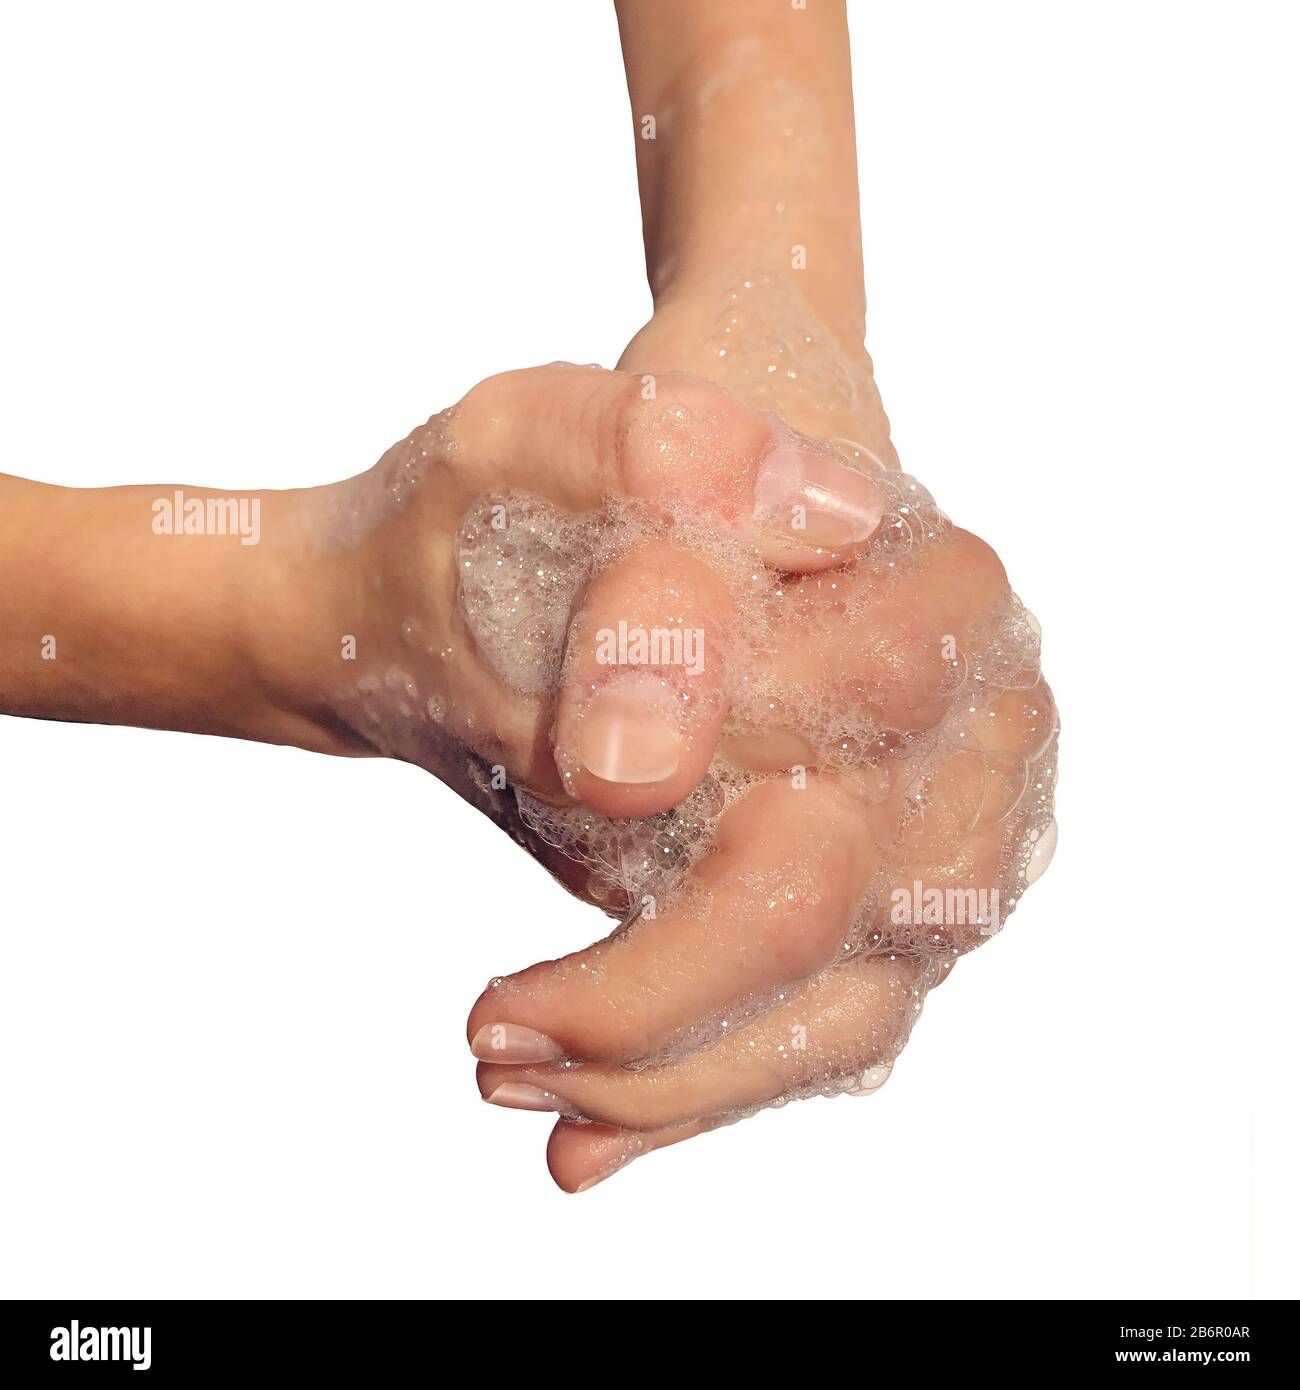 Igiene del lavaggio delle mani con acqua e sapone per pulire la pelle sporca contaminata per evitare malattie o l'influenza lavando a mano e pulendo le dita. Foto Stock